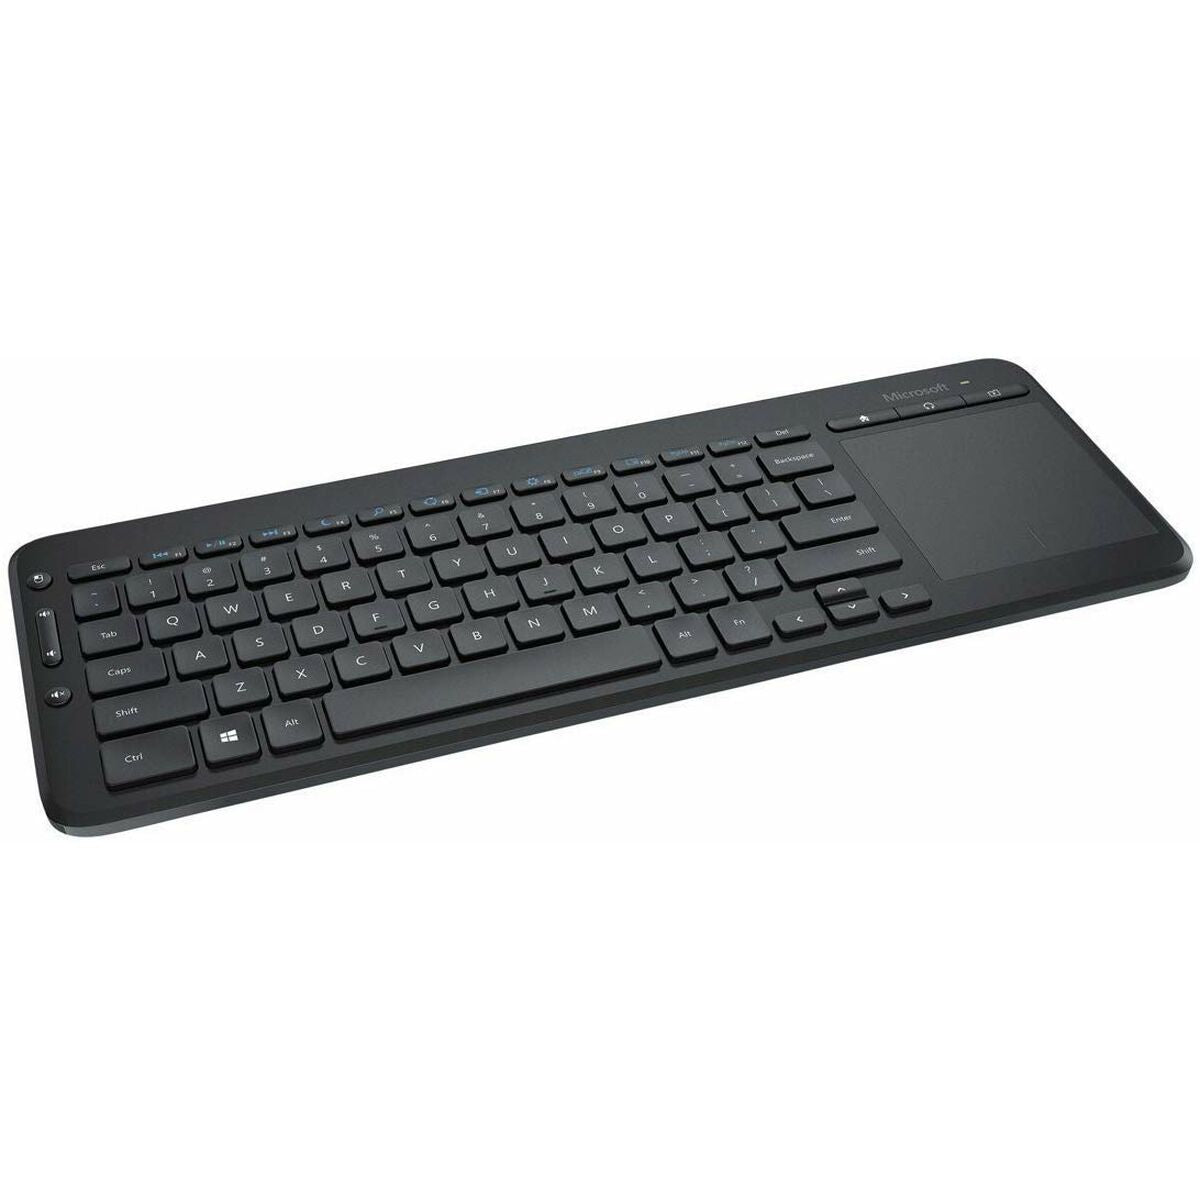 Keyboard Microsoft N9Z-00008 Black (Refurbished B)